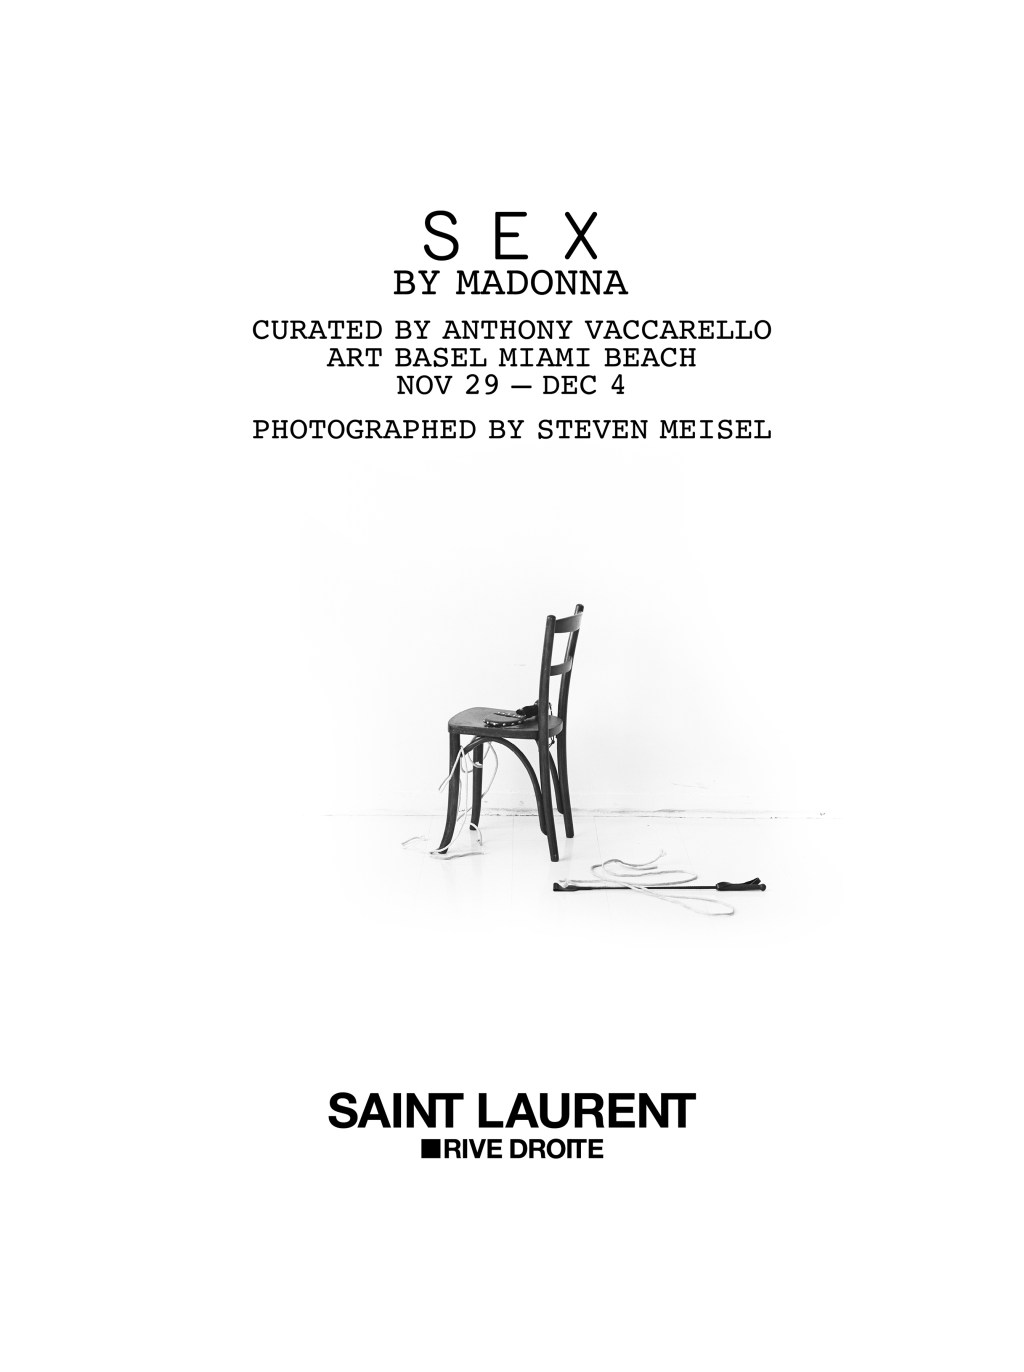 Art Basel Miami: Saint Laurent apresenta a mostra madonna